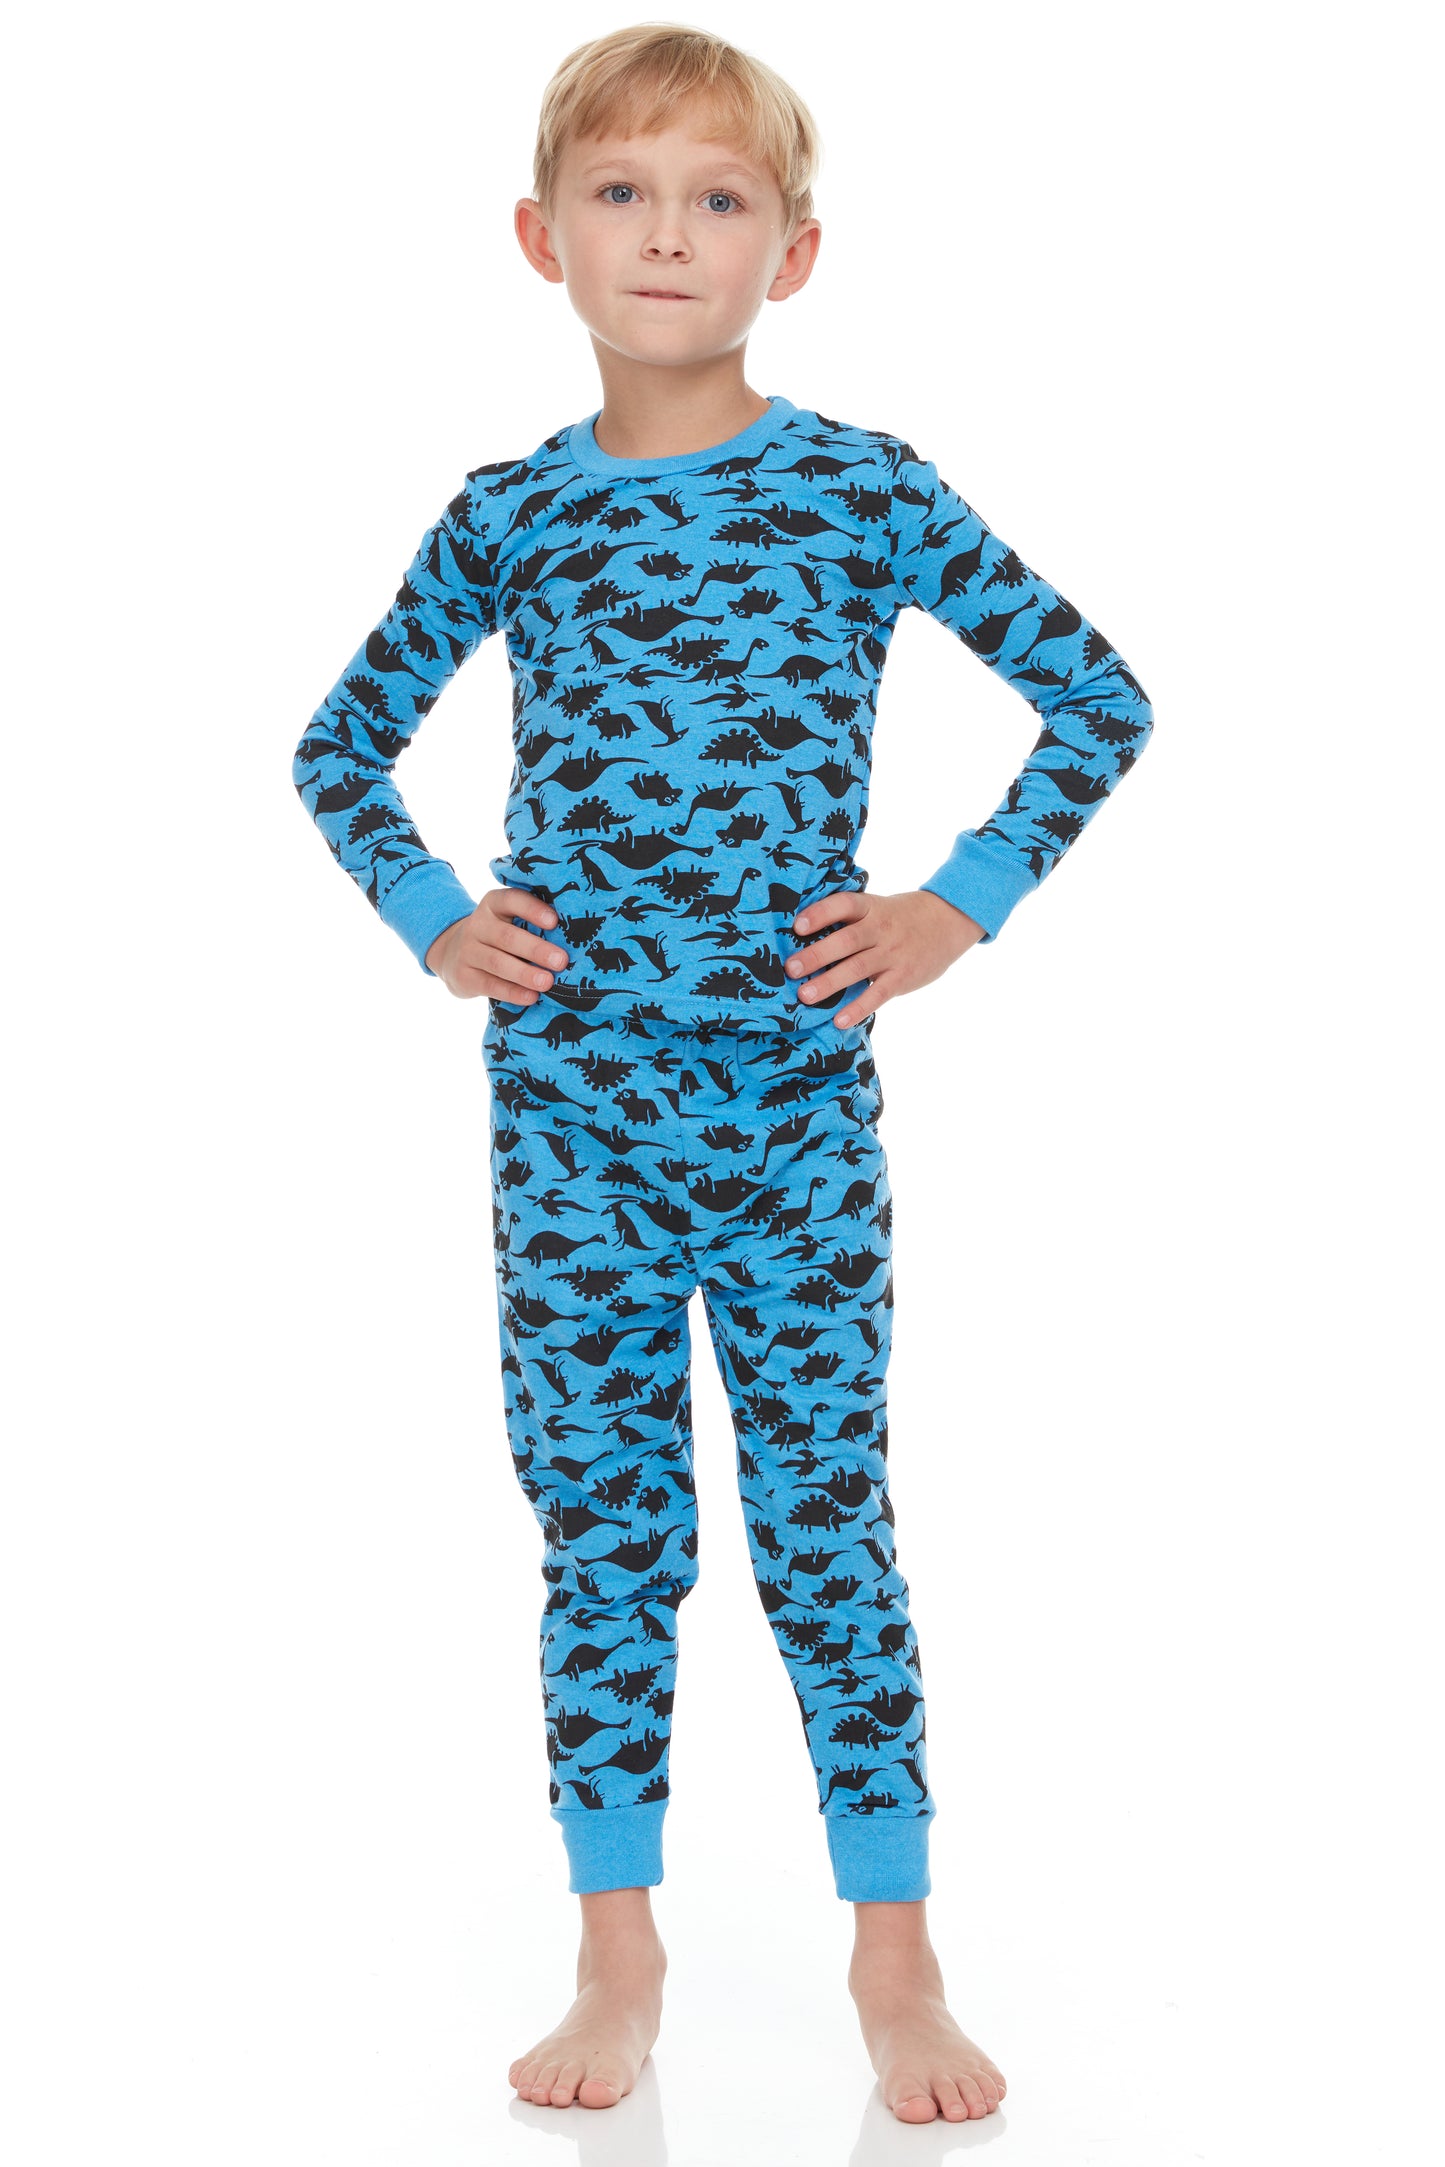 Blue Dinosaurs Kids Pajamas - Dark